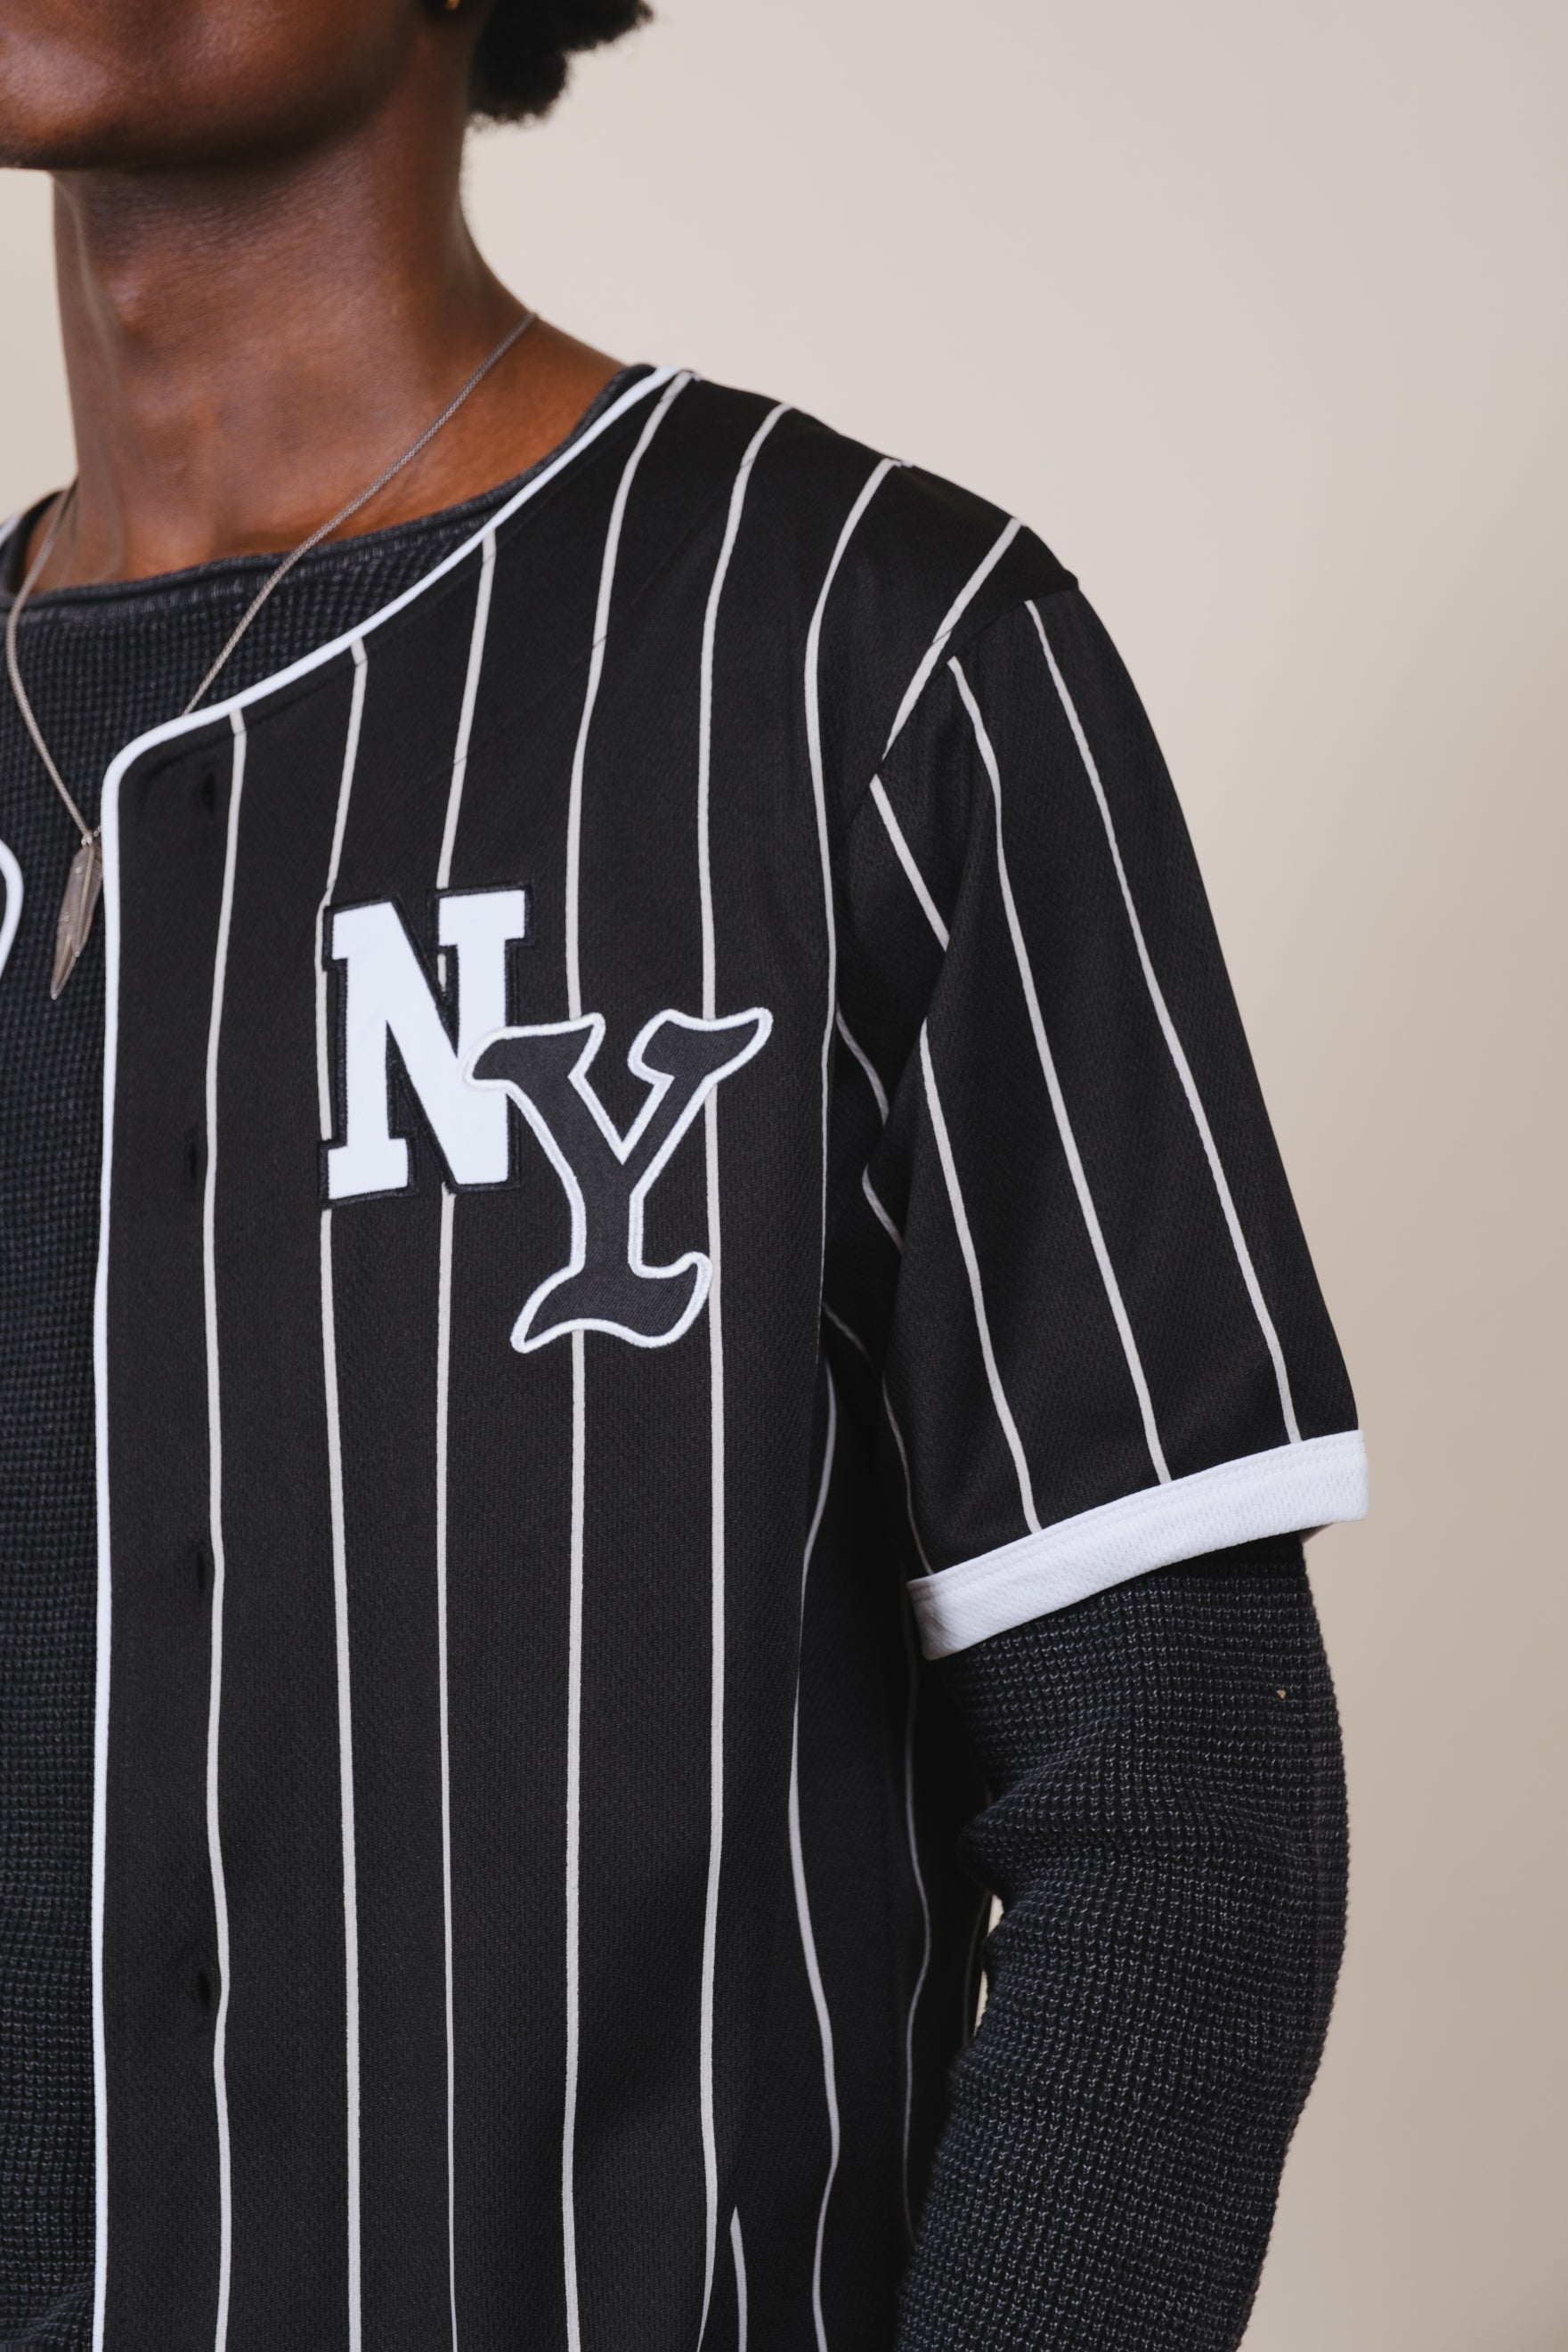 NY Pinstripe Baseball Jersey